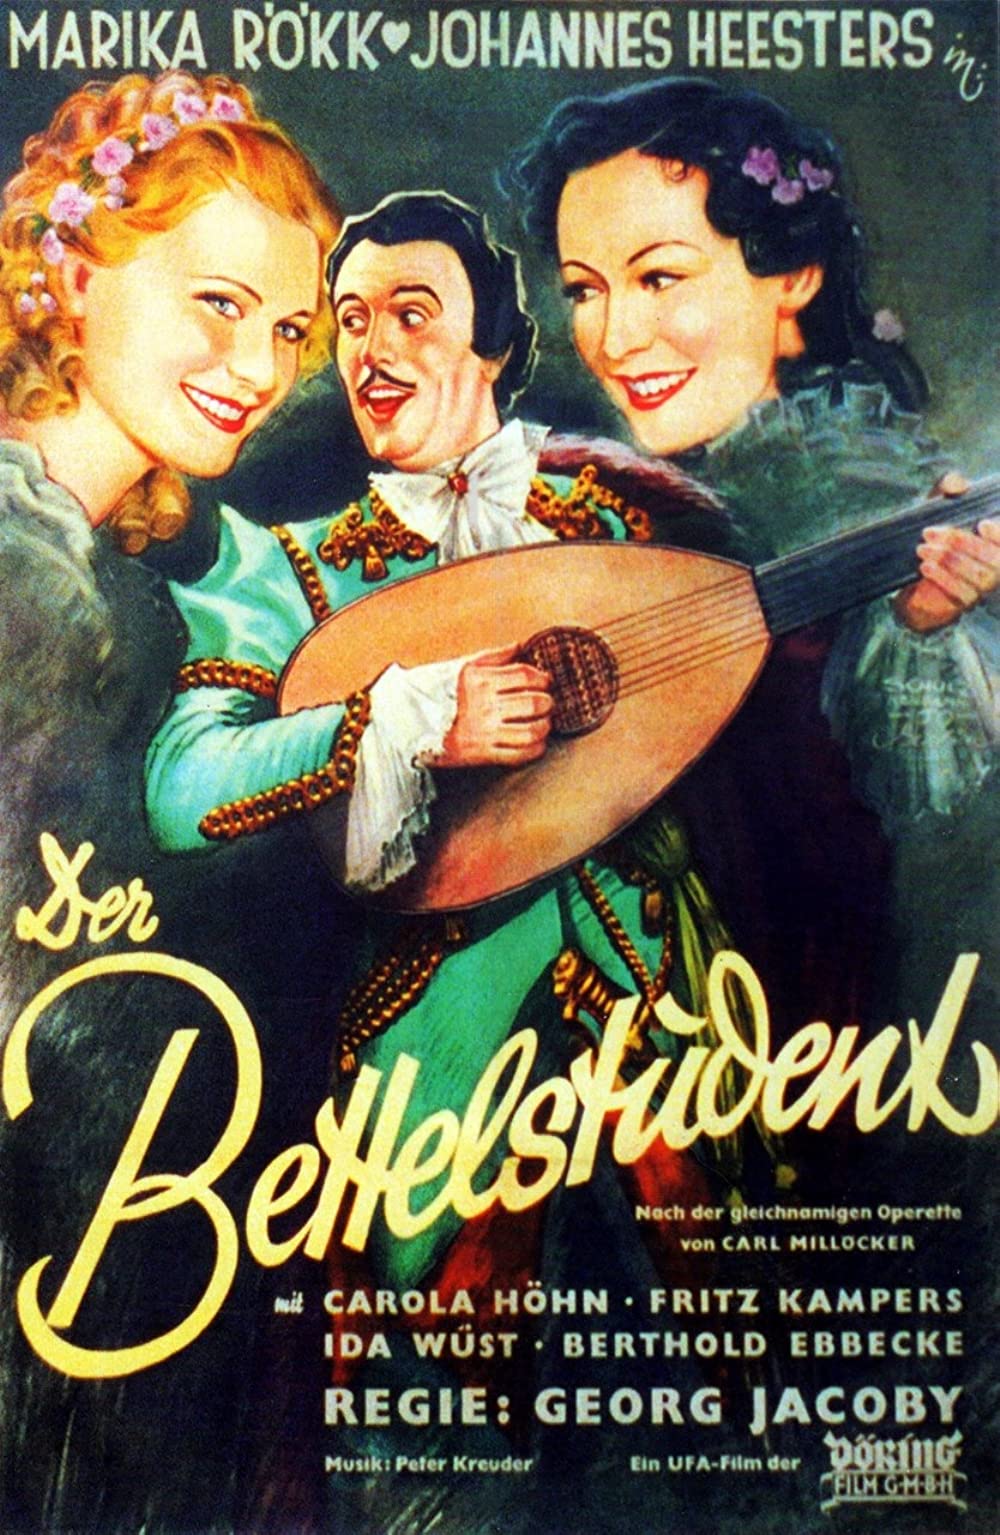 Filmbeschreibung zu Der Bettelstudent (1936)